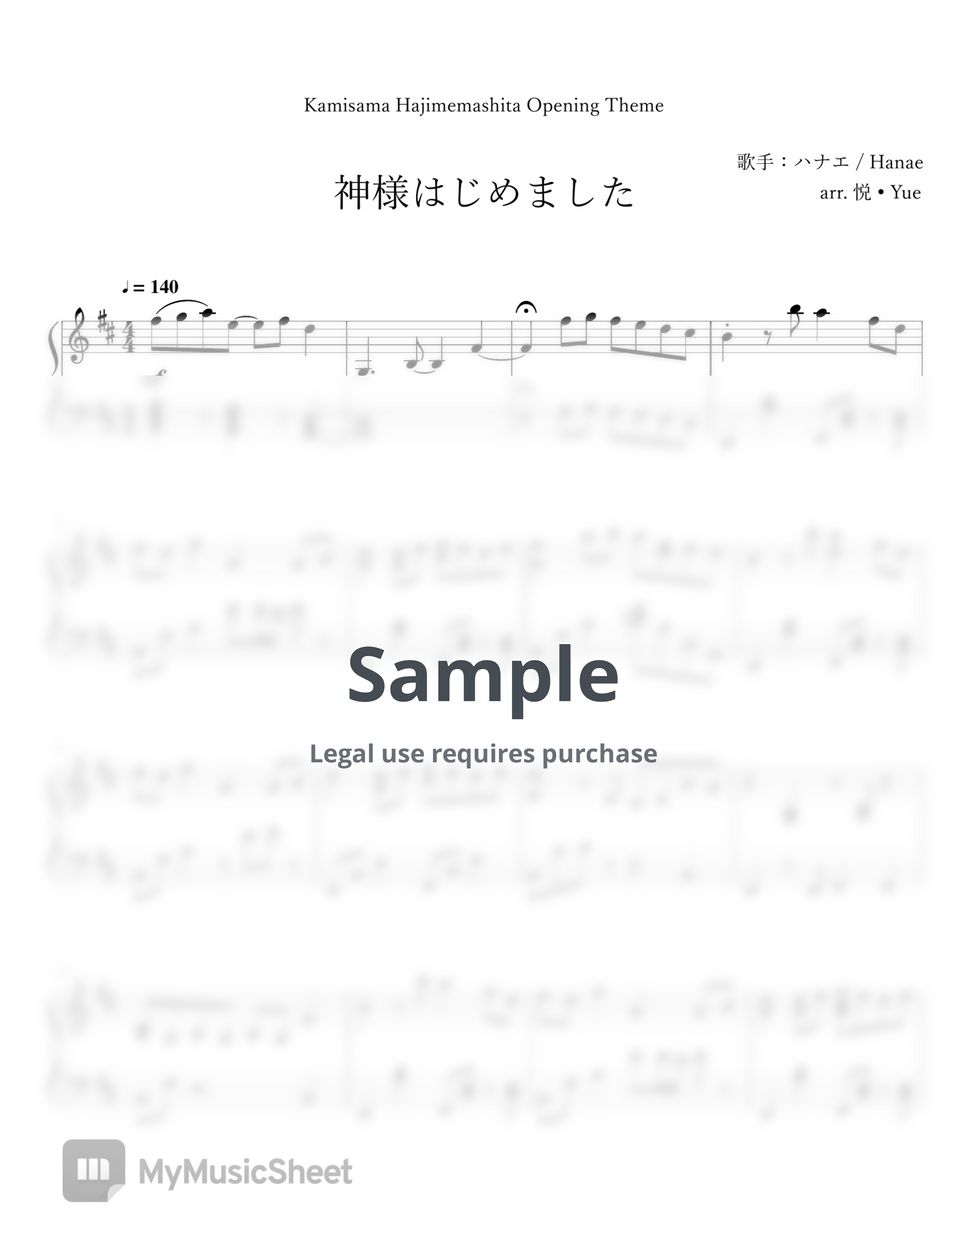 ハナエ / Hanae - Kamisama Hajimemashita OP 『神様はじめました』Piano (Arrangement) by 悦 • Yue